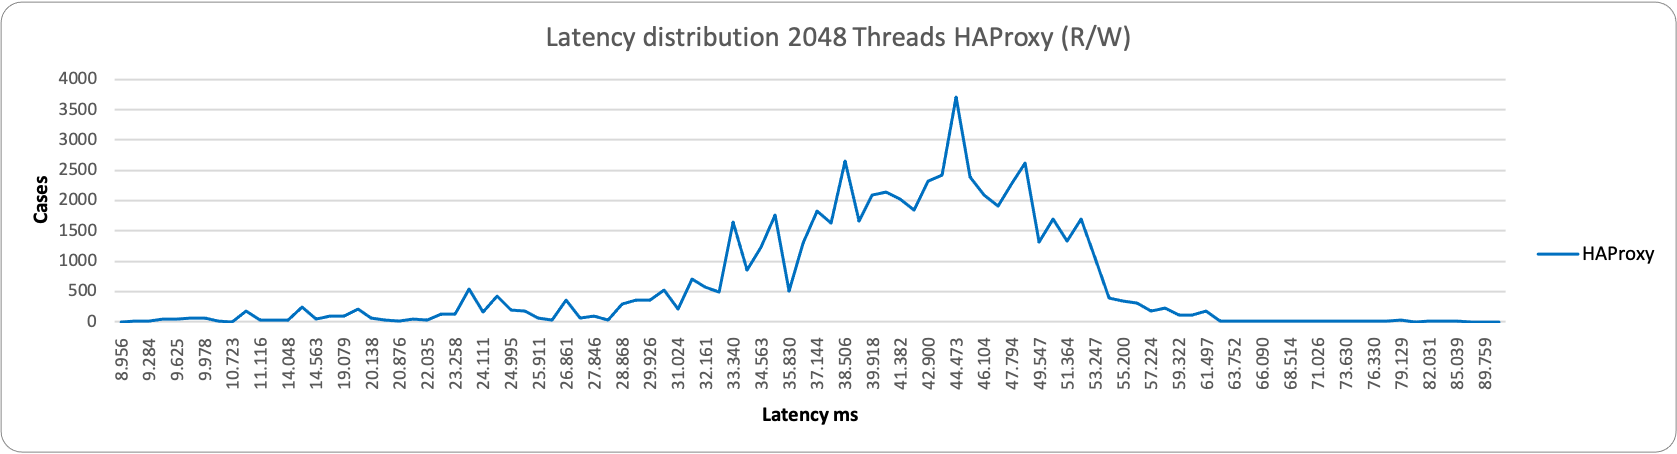 latency2048 1node HAproxy rw